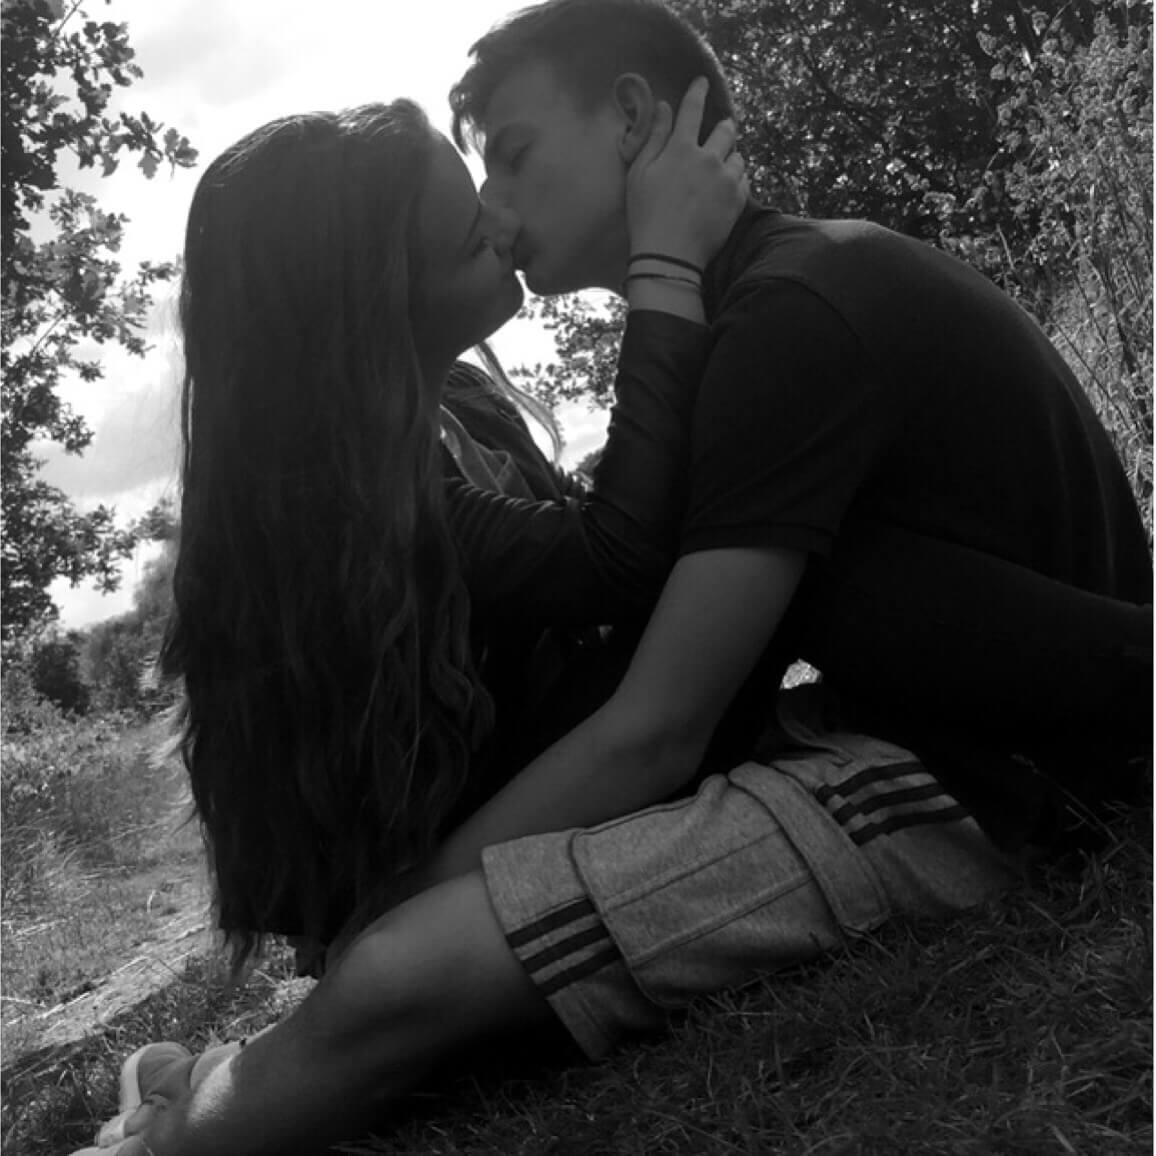 Фото где целуются девушка и парень целуются